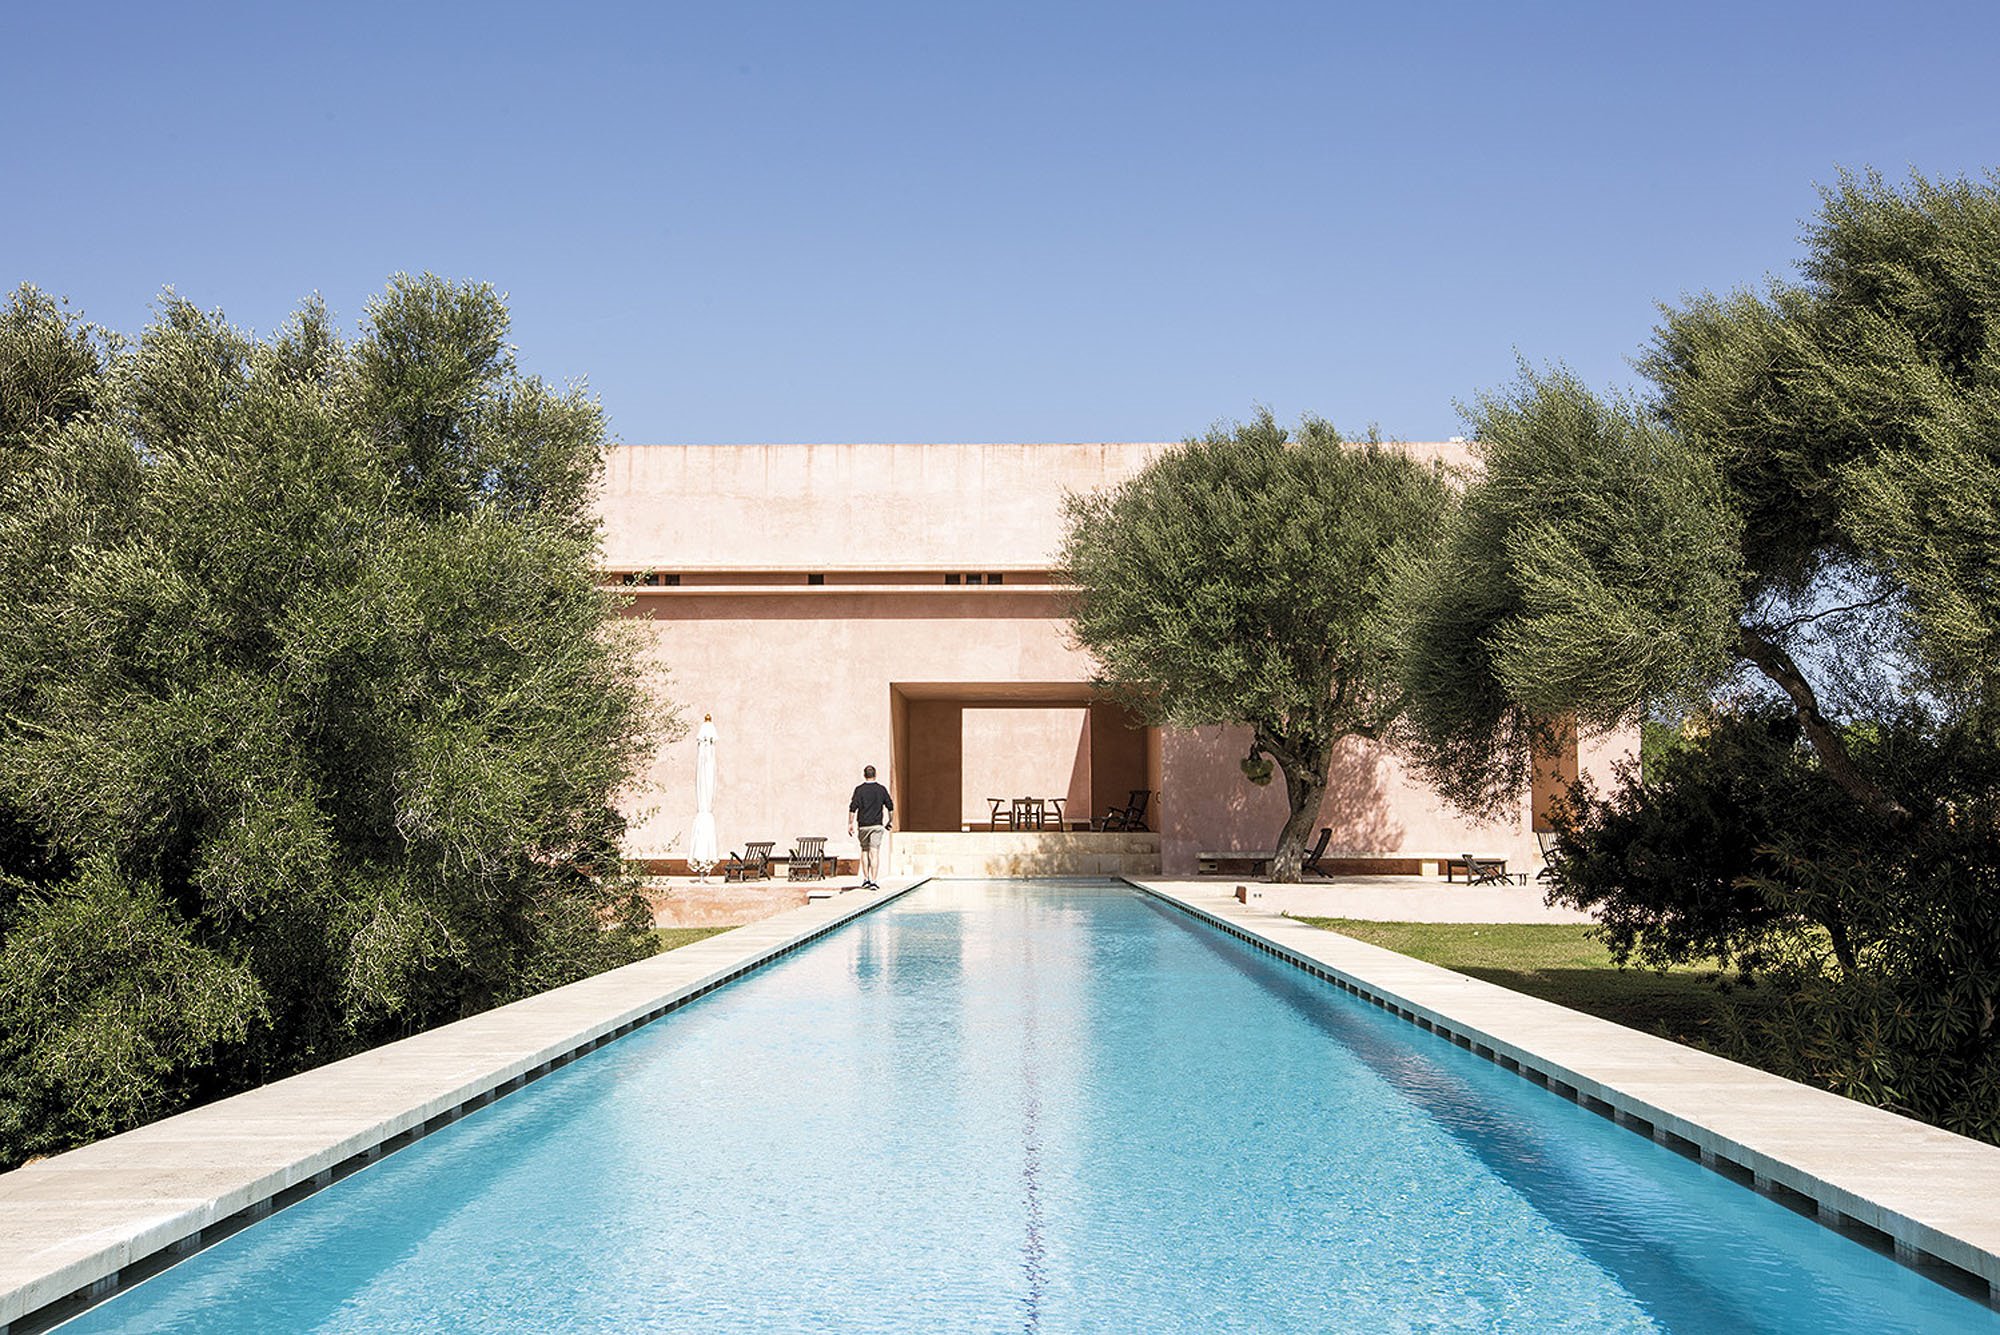 Casa de color rosa de claudio Silvestrin y John pawson en Mallorca vista de la piscina